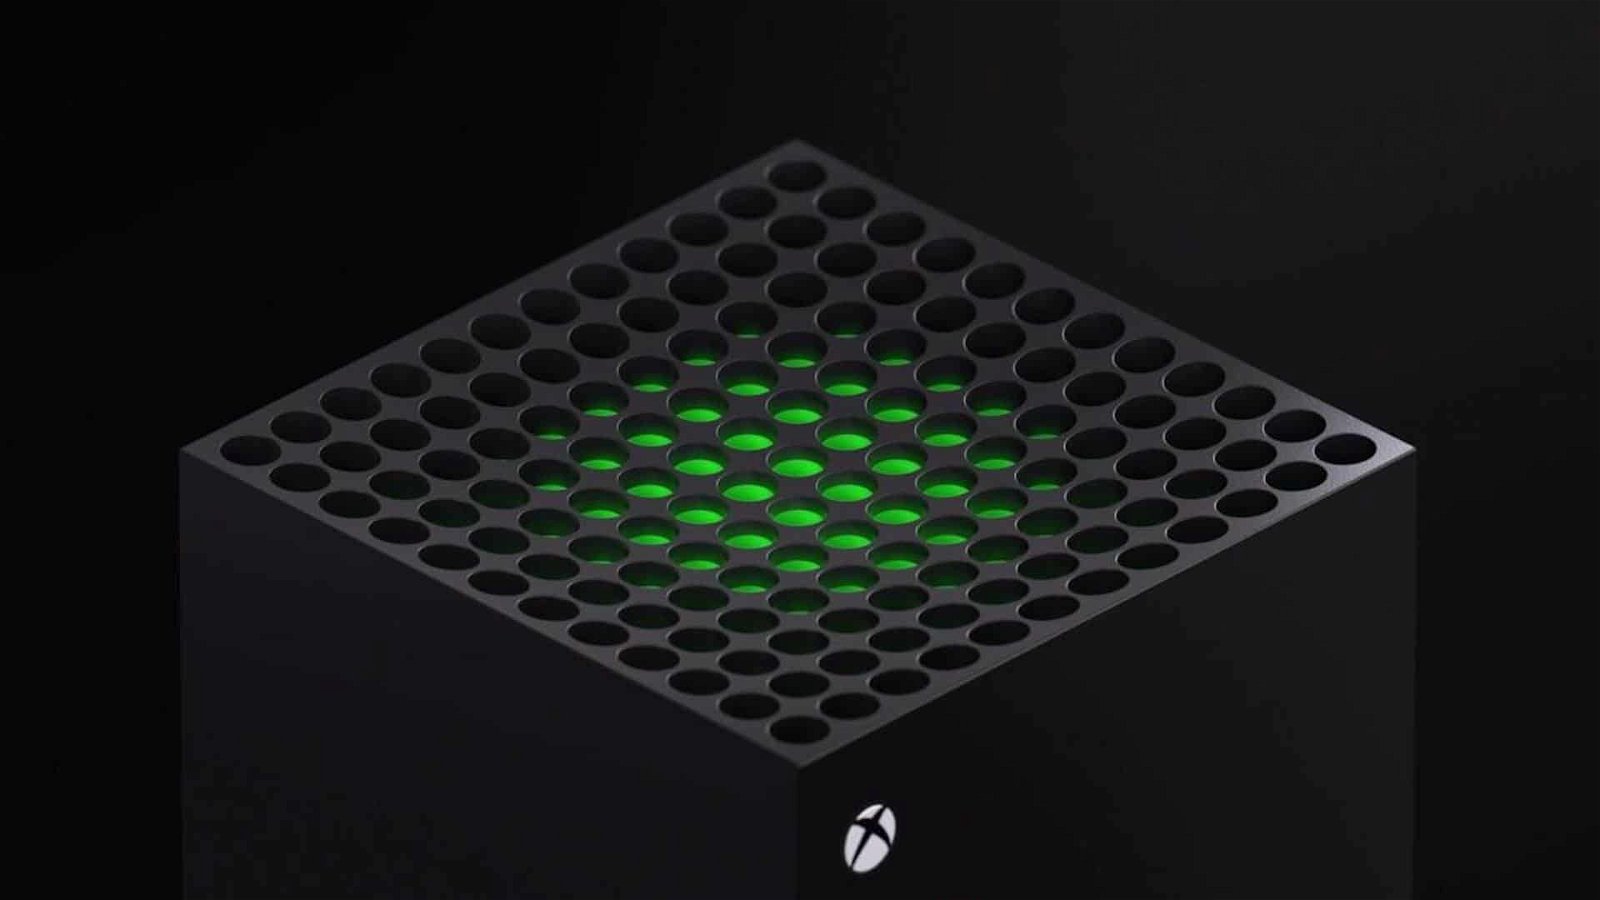 Xbox Series X a meno di 480€: acquistala ora prima dell'aumento di prezzo!